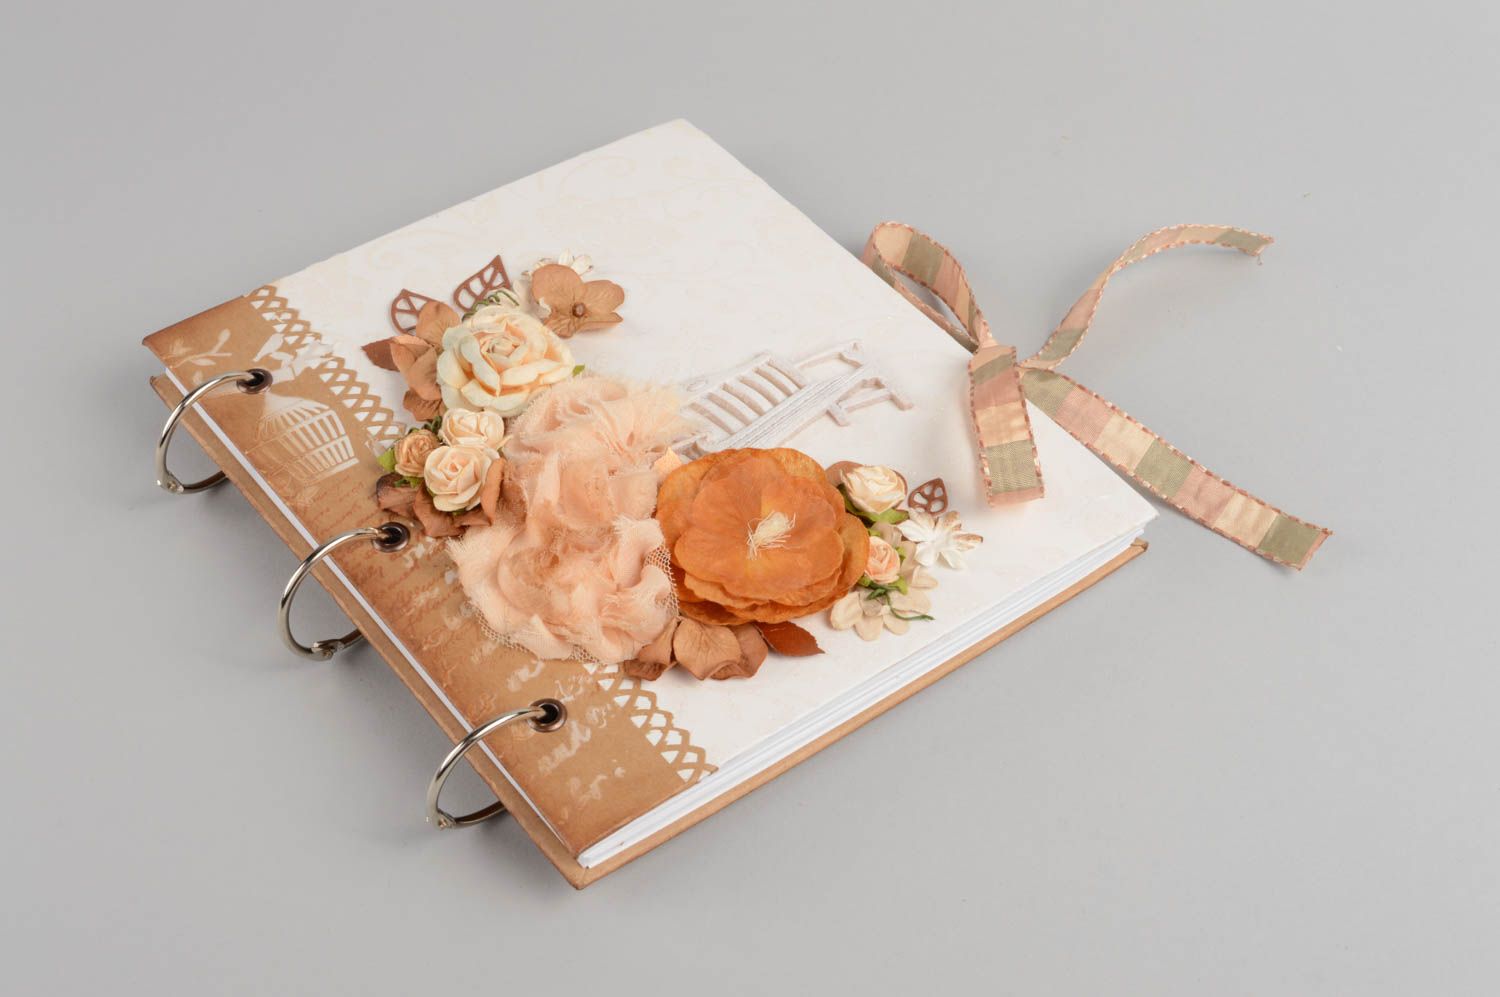 Schönes Gästebuch zur Hochzeit für Glückwünsche einzigartig Romantik handmade foto 2